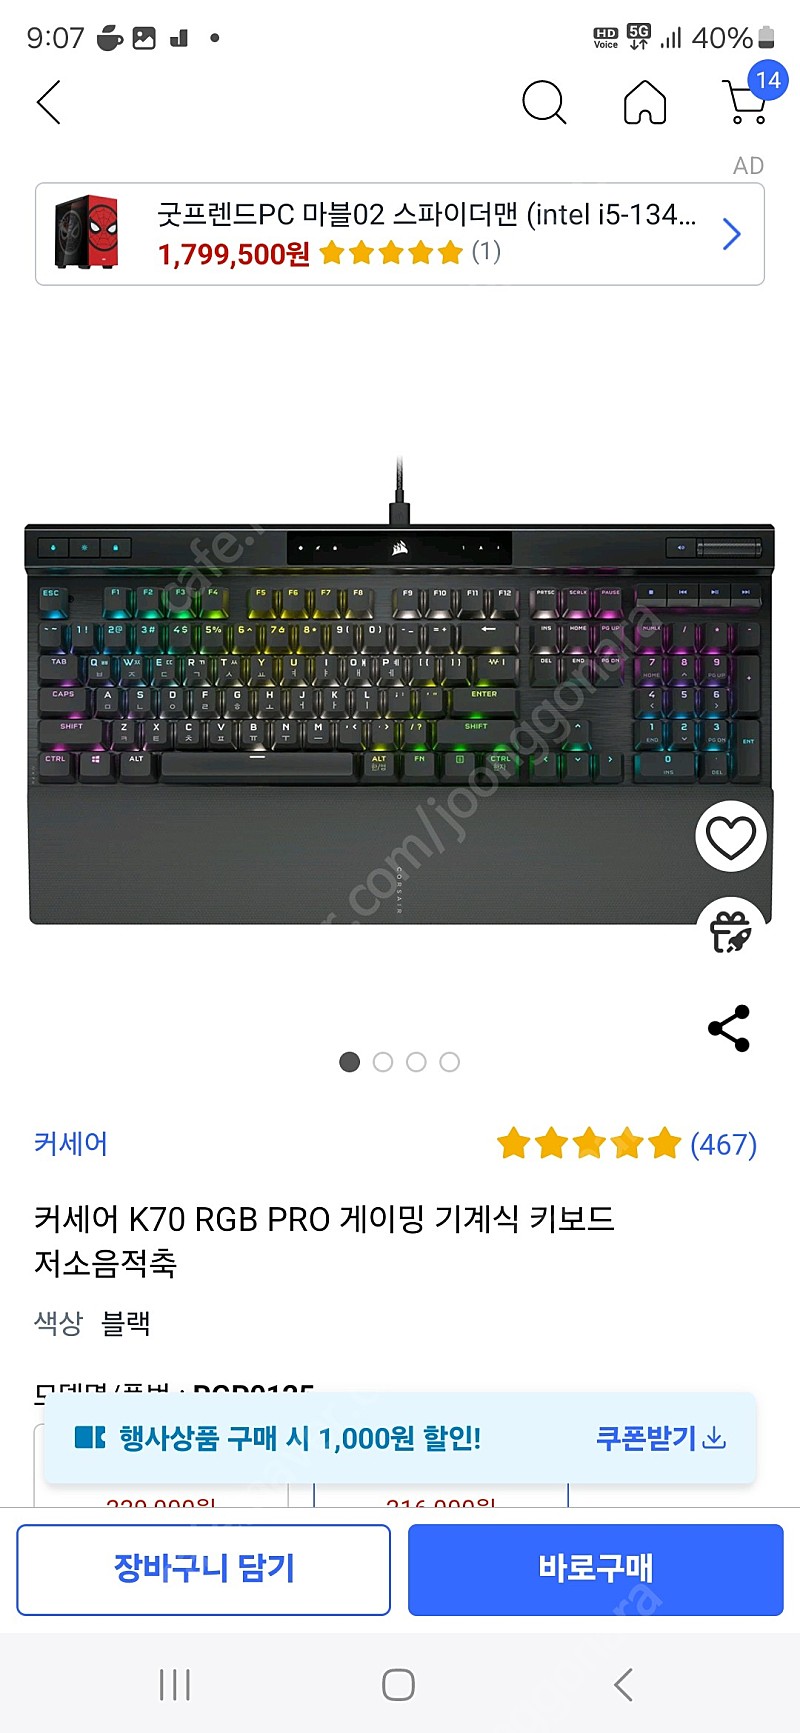 [미개봉,새상품,풀박스] 커세어 k70 rgb pro 저소음적축 게이밍키보드 판매